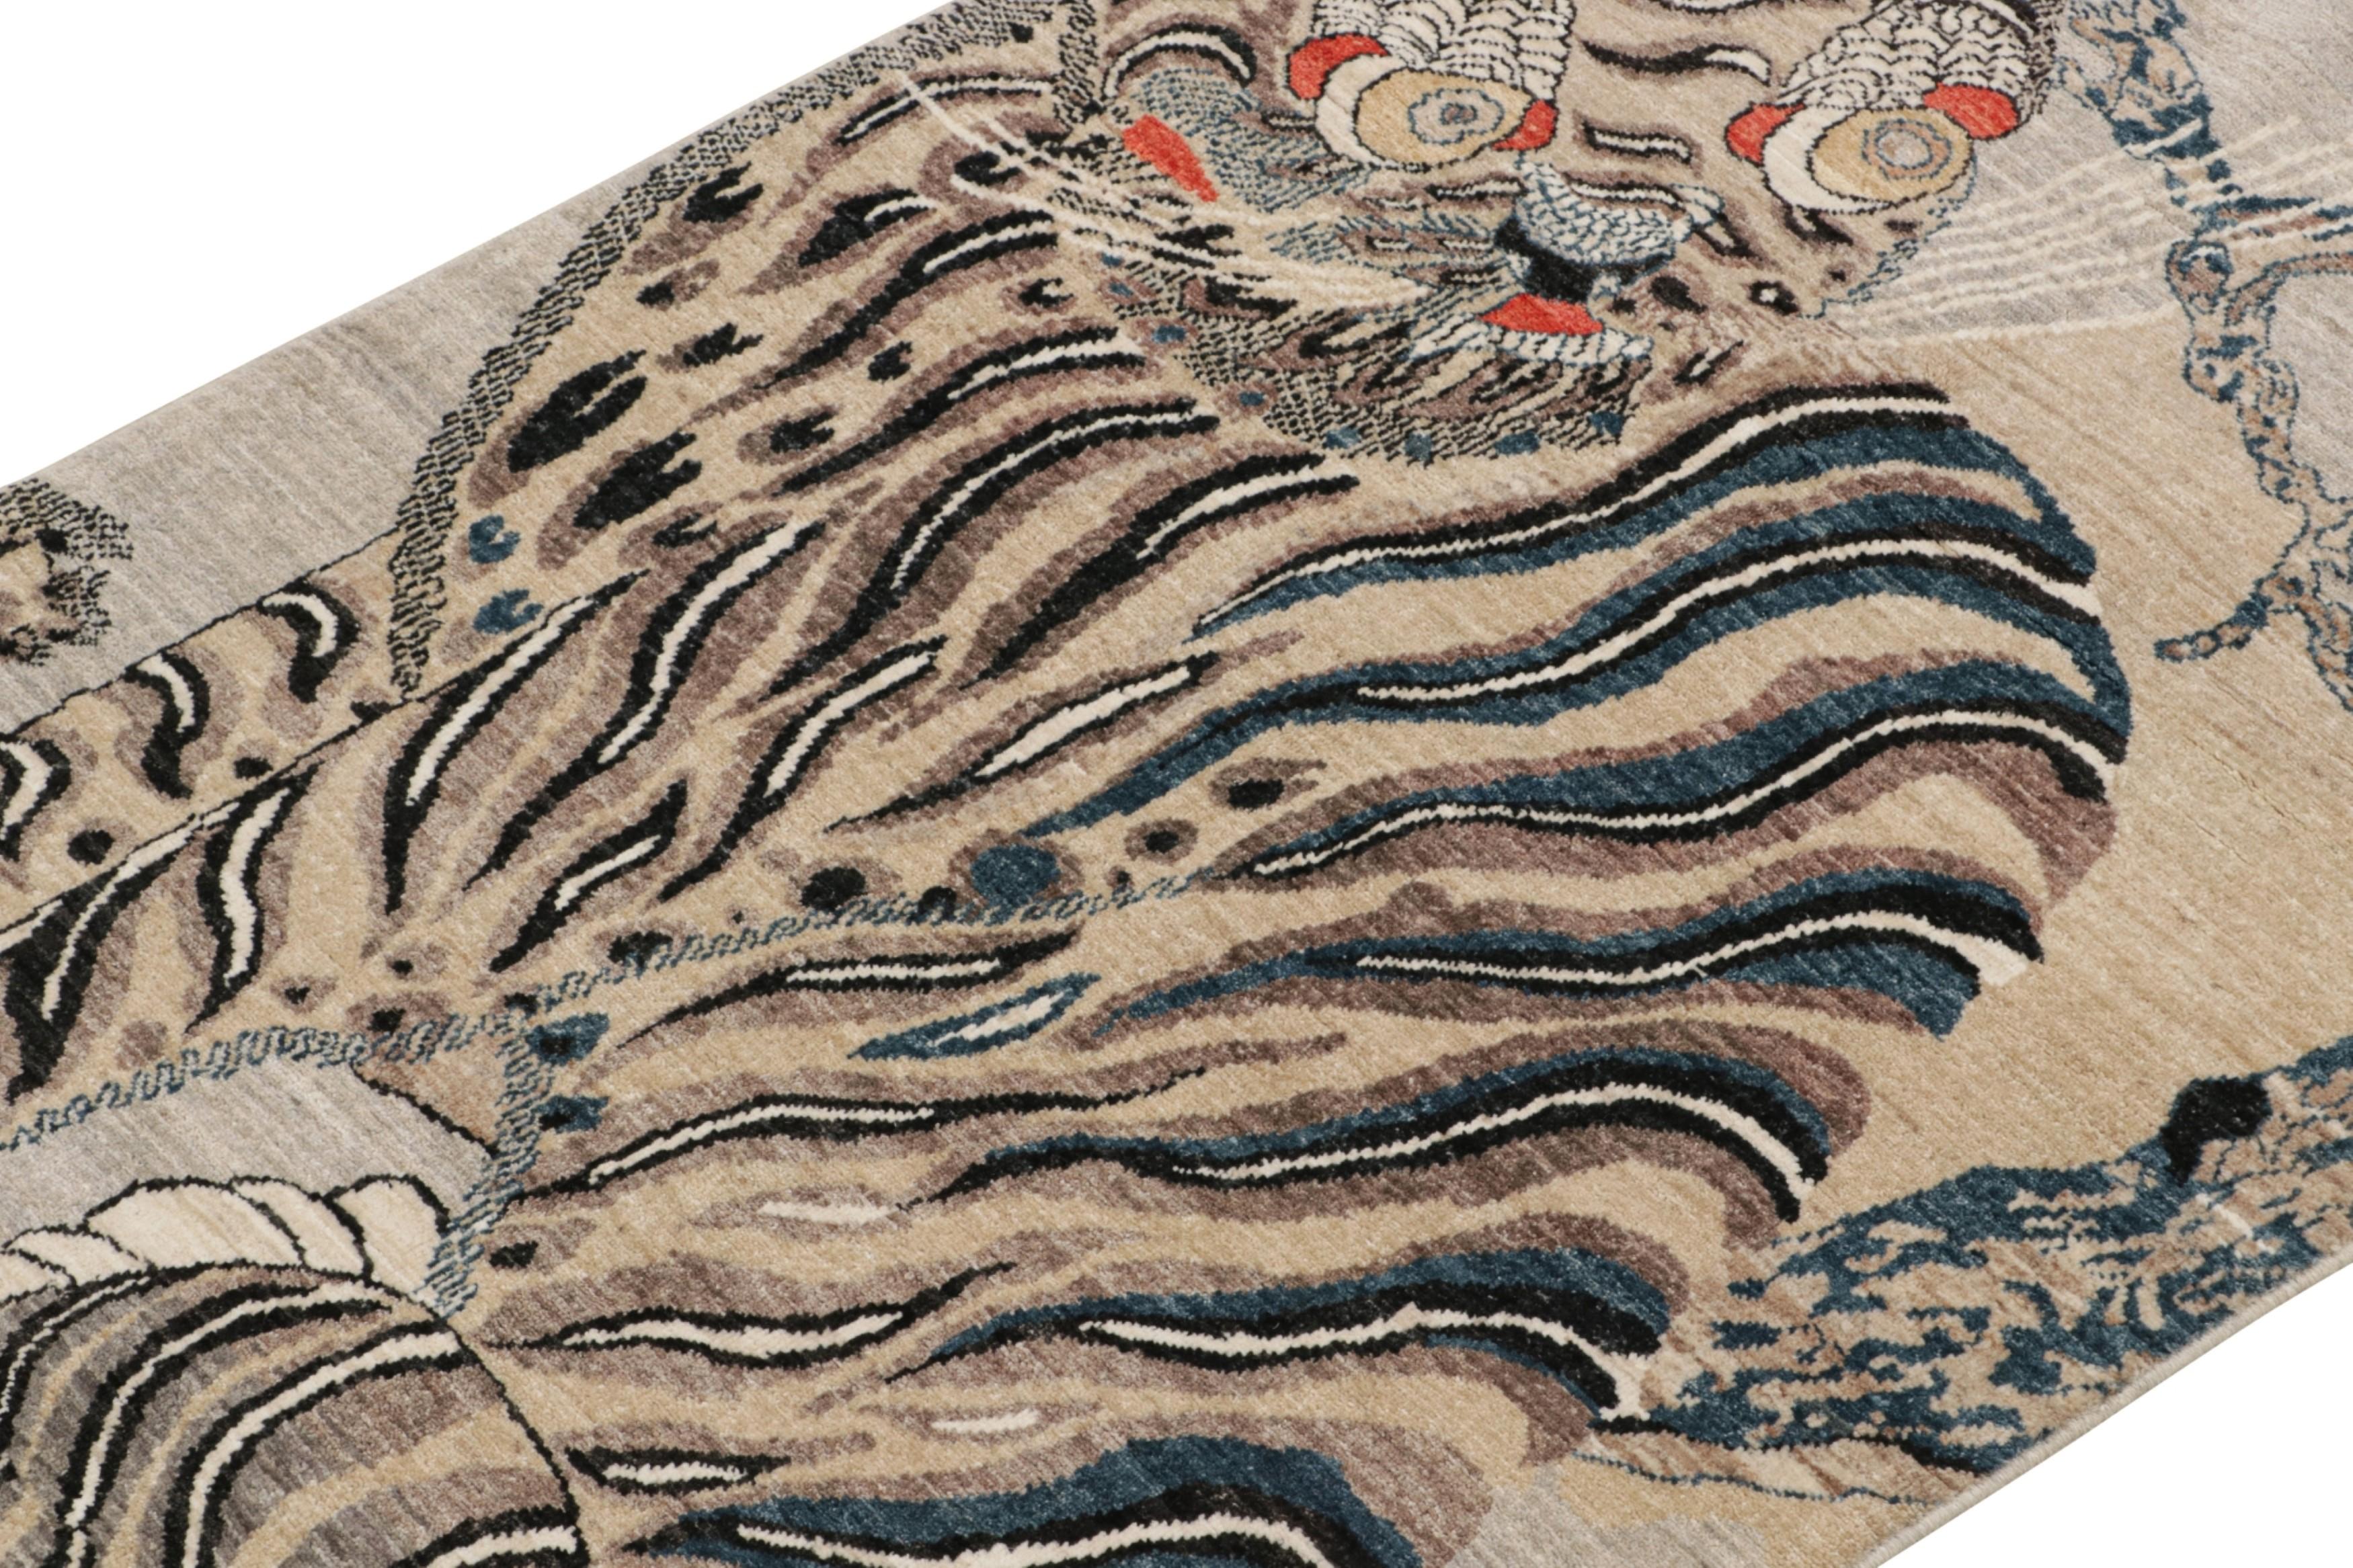 Ce tapis tigré contemporain 3x5 est un nouvel ajout audacieux à la Collection Tigres de Rug & Kilim. Notre collection s'étend sur plusieurs cultures et reprend les styles picturaux emblématiques de l'art populaire et des tapis orientaux anciens